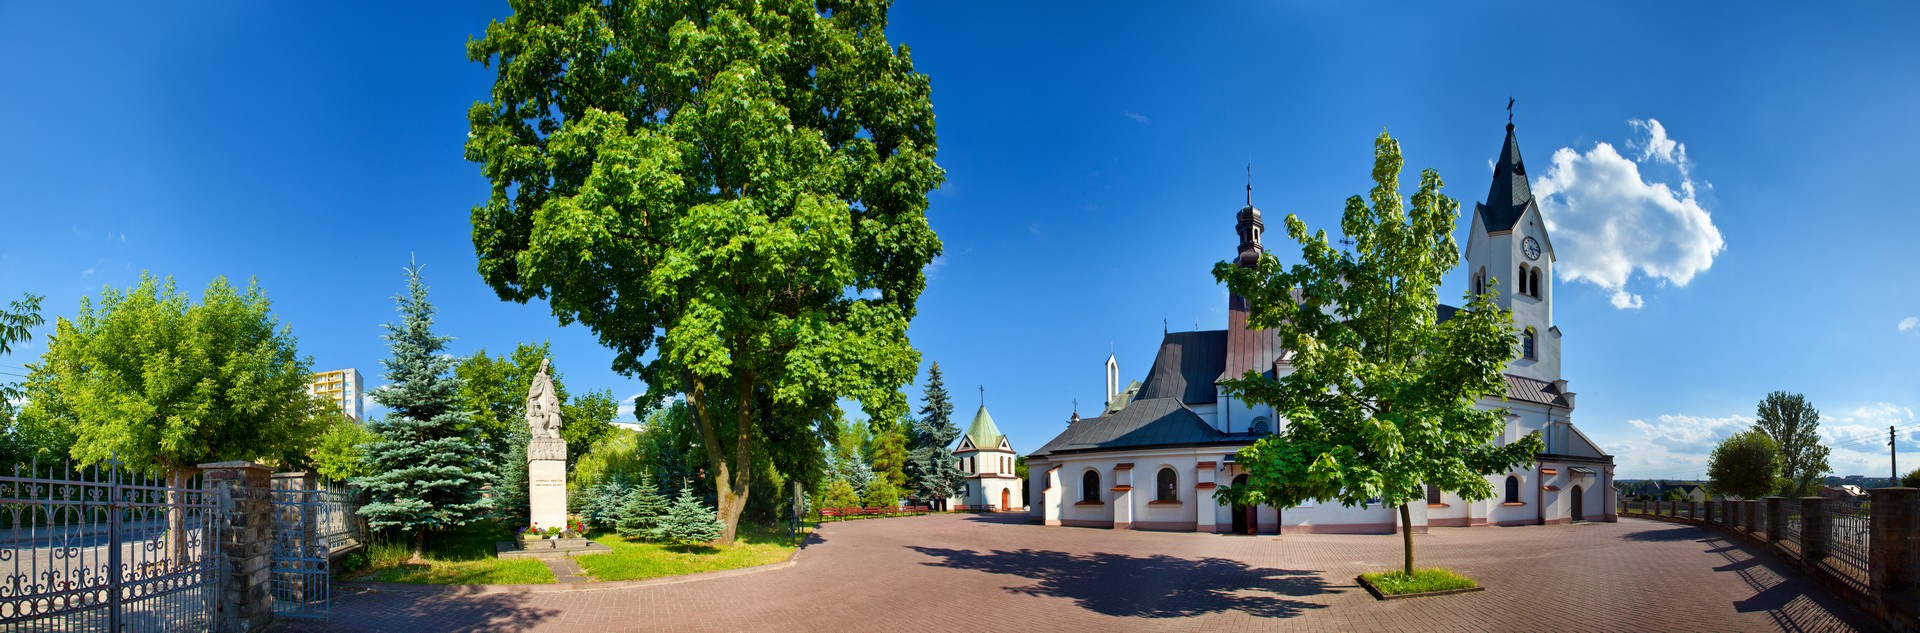 Starachowice panorama